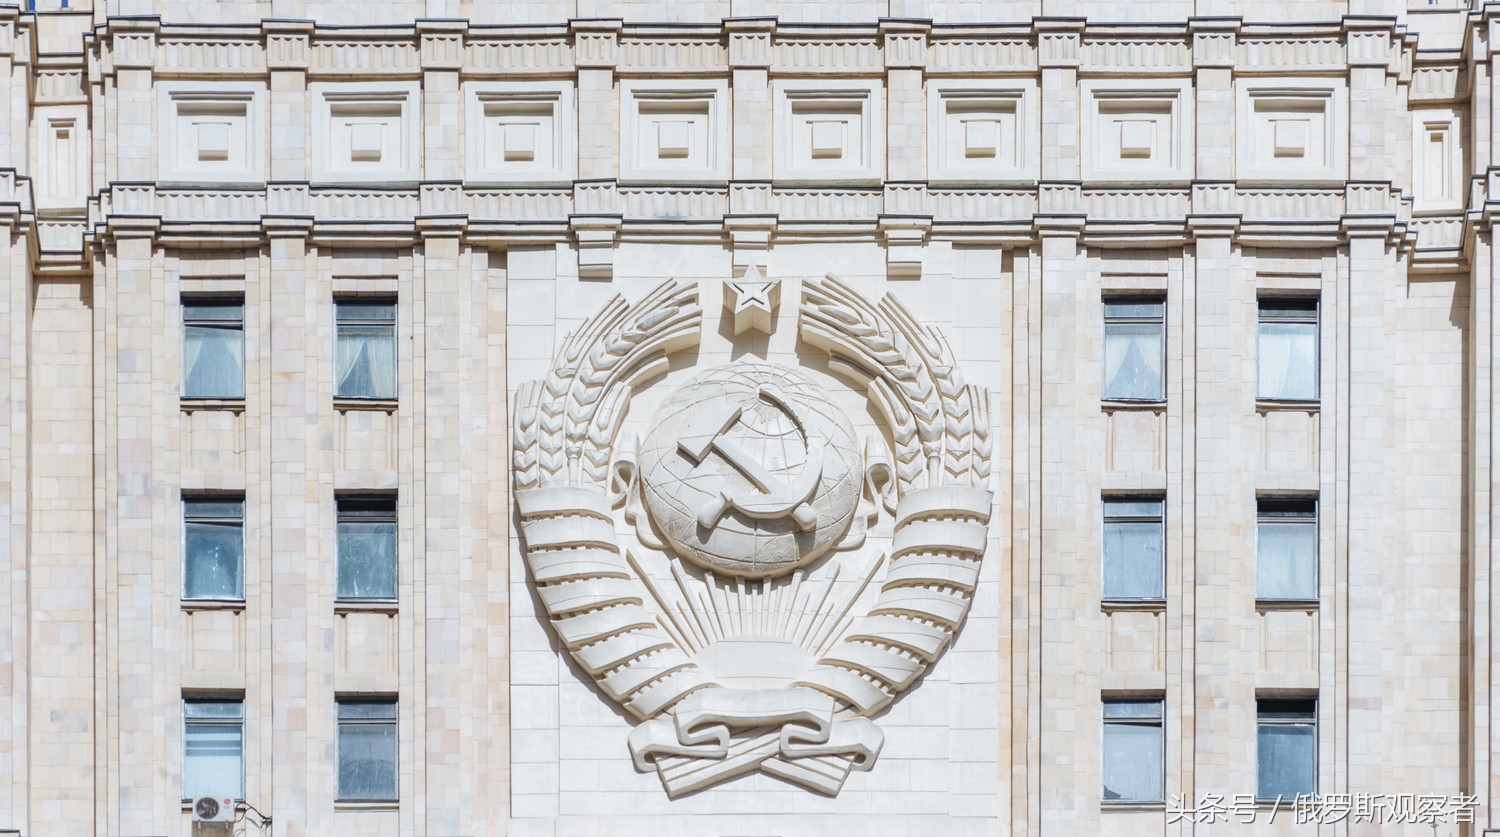 苏联国徽依旧亮眼外交部大楼的建筑艺术风格呈现了强烈的意识形态特征